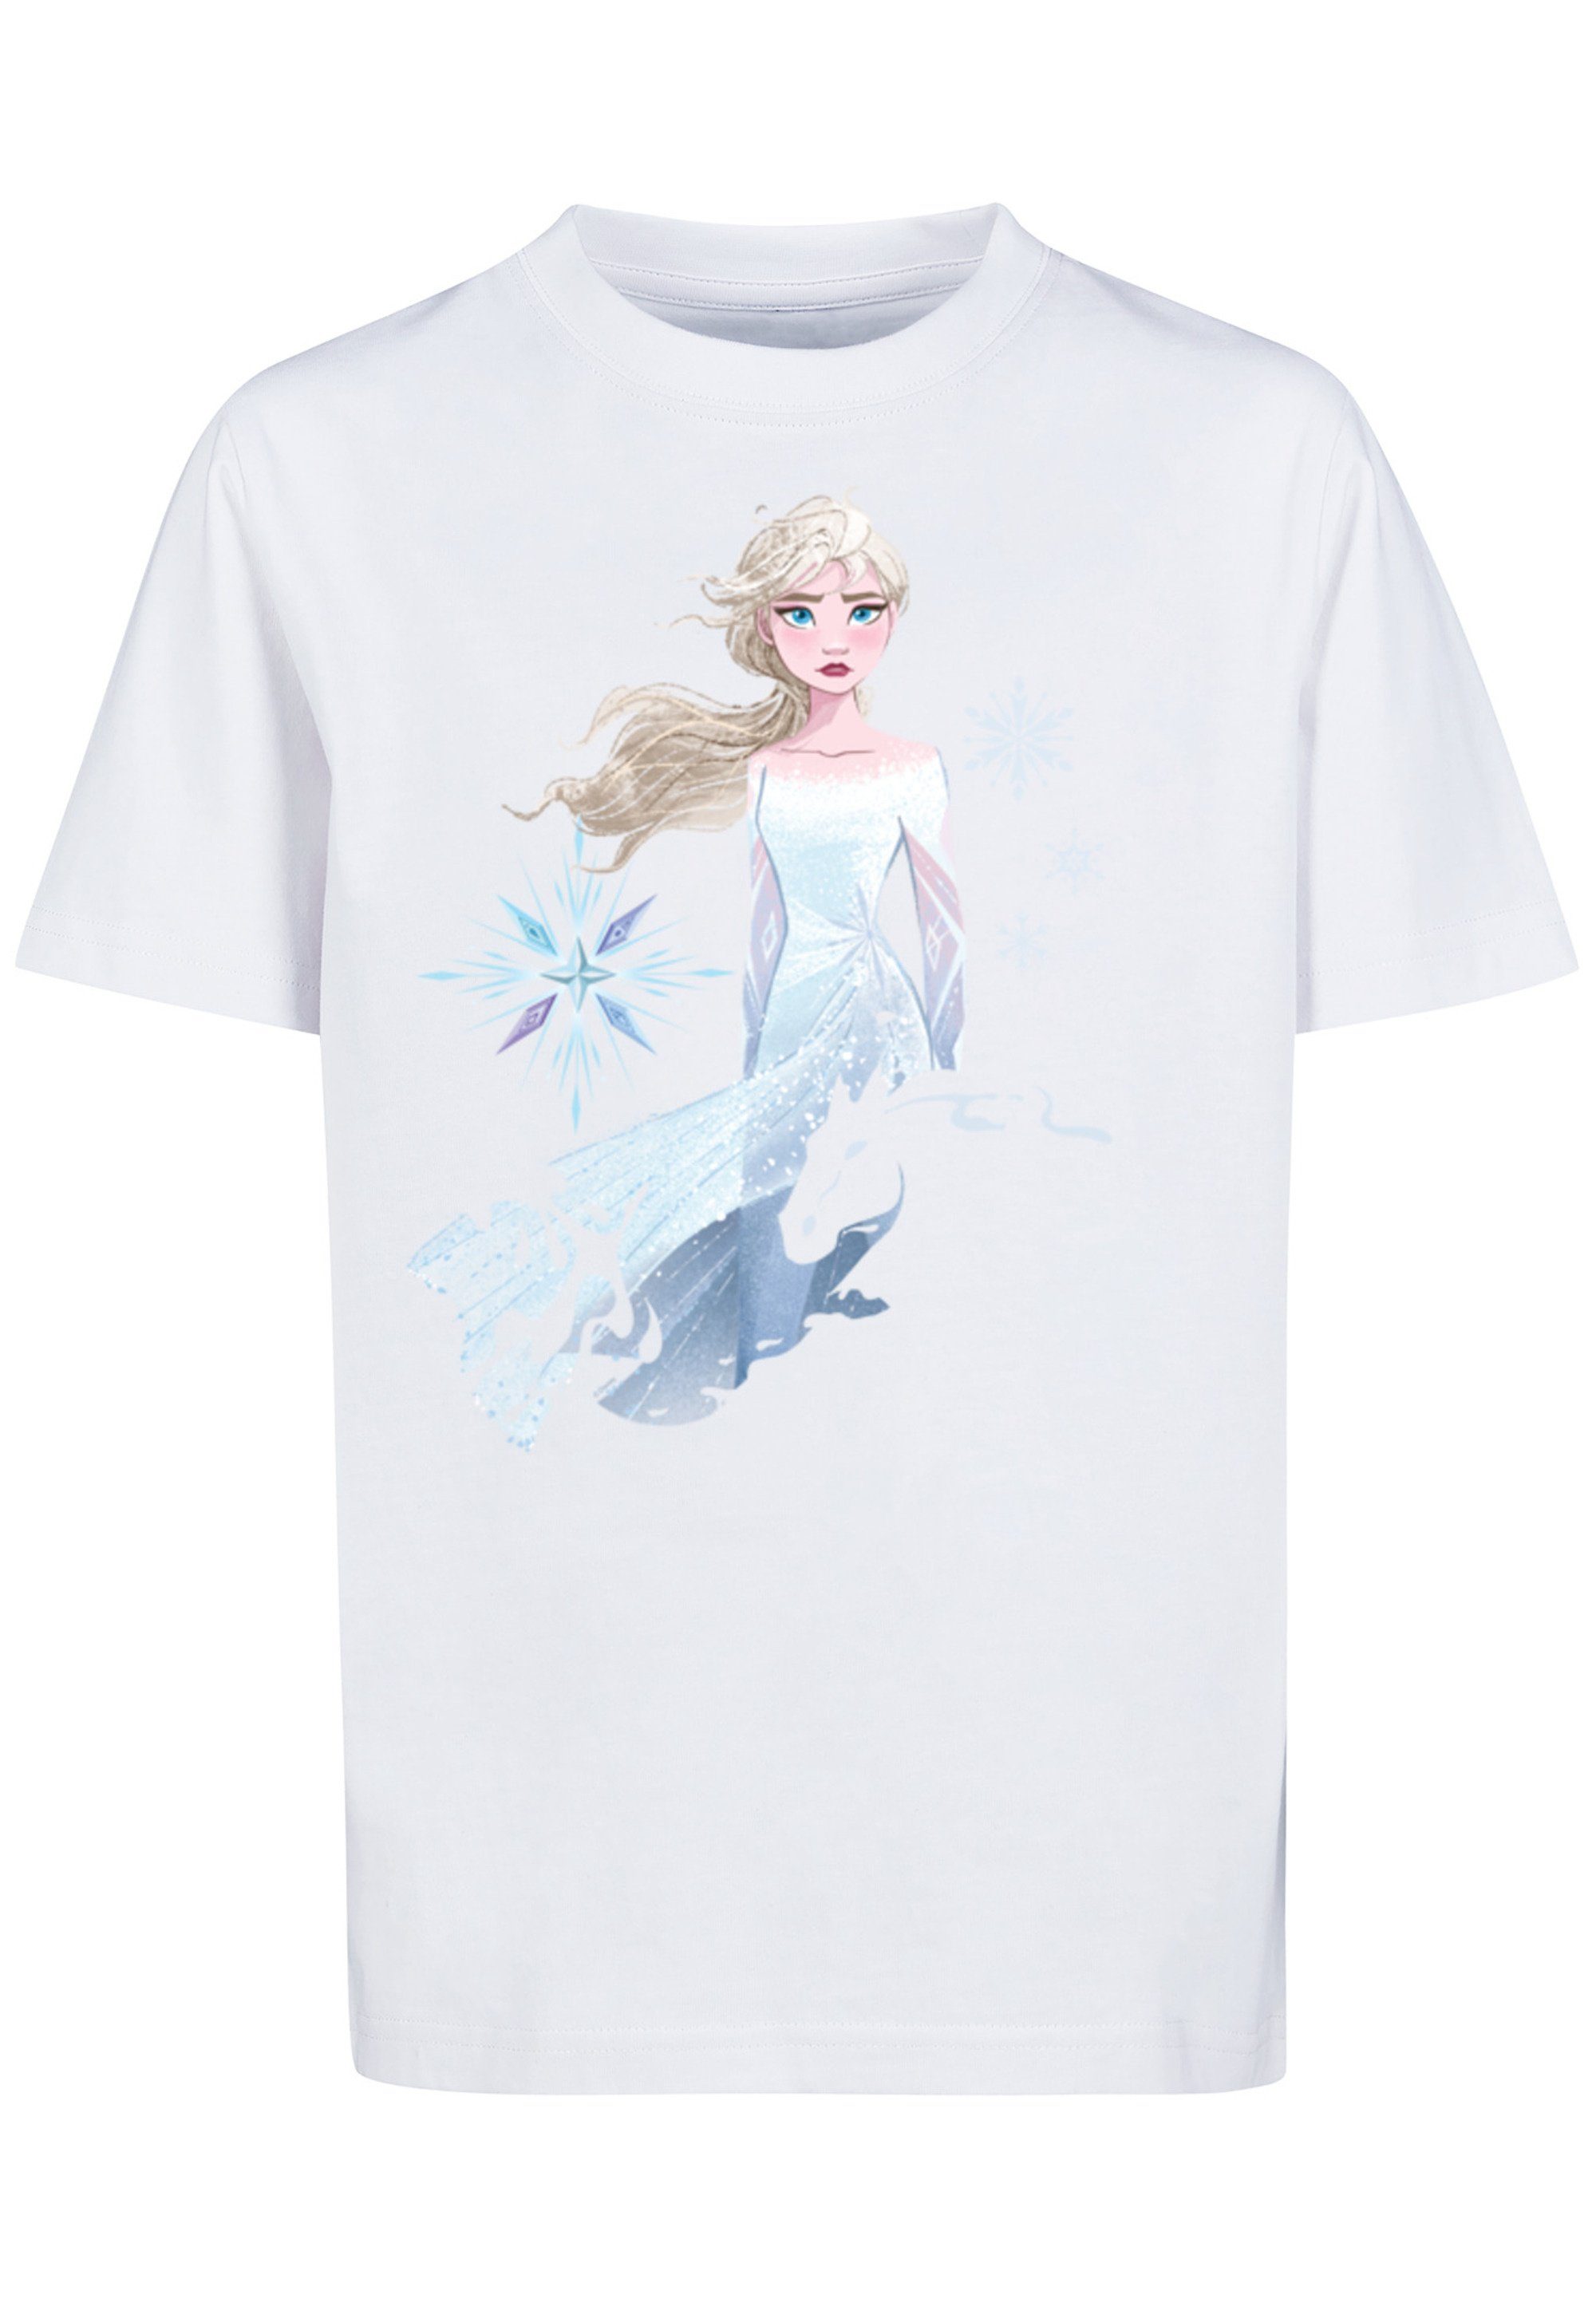 Nokk Elsa Wassergeist Pferd Silhouette Frozen 2 Merch,Jungen,Mädchen,Bedruckt Unisex F4NT4STIC T-Shirt weiß Disney Kinder,Premium